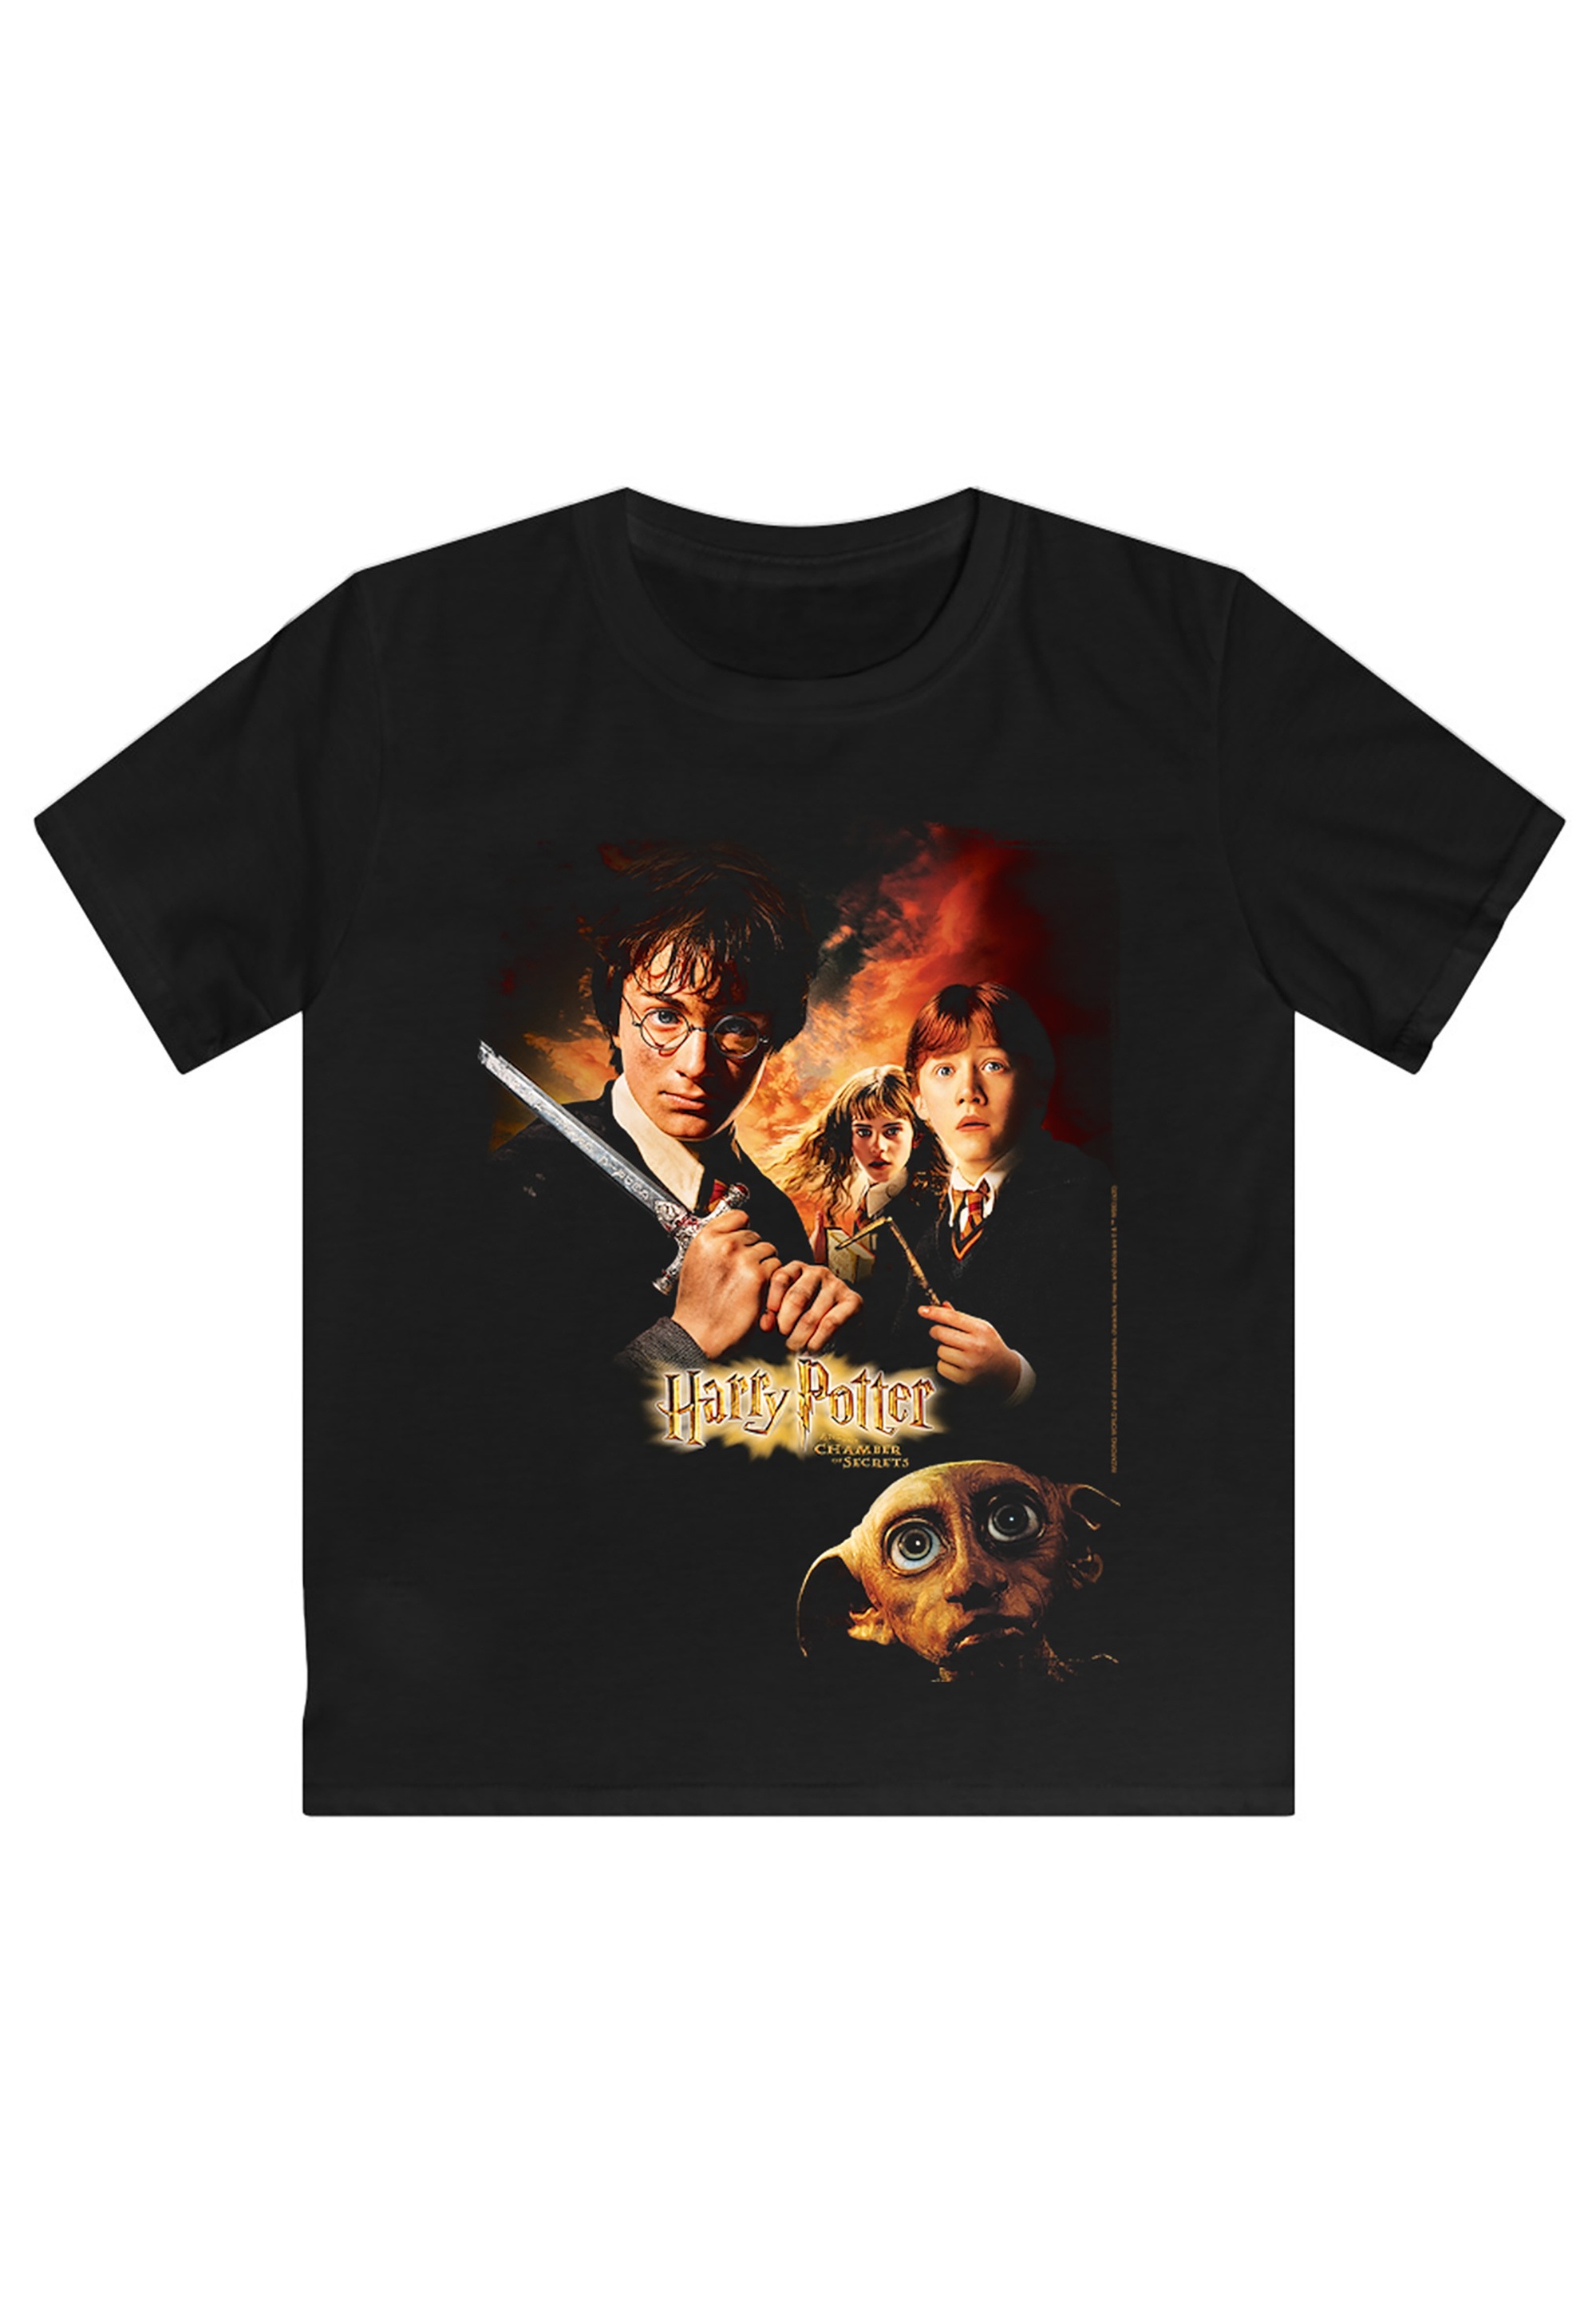 Potter BAUR T-Shirt F4NT4STIC Poster«, »Harry Print Kammer des Schreckens | kaufen